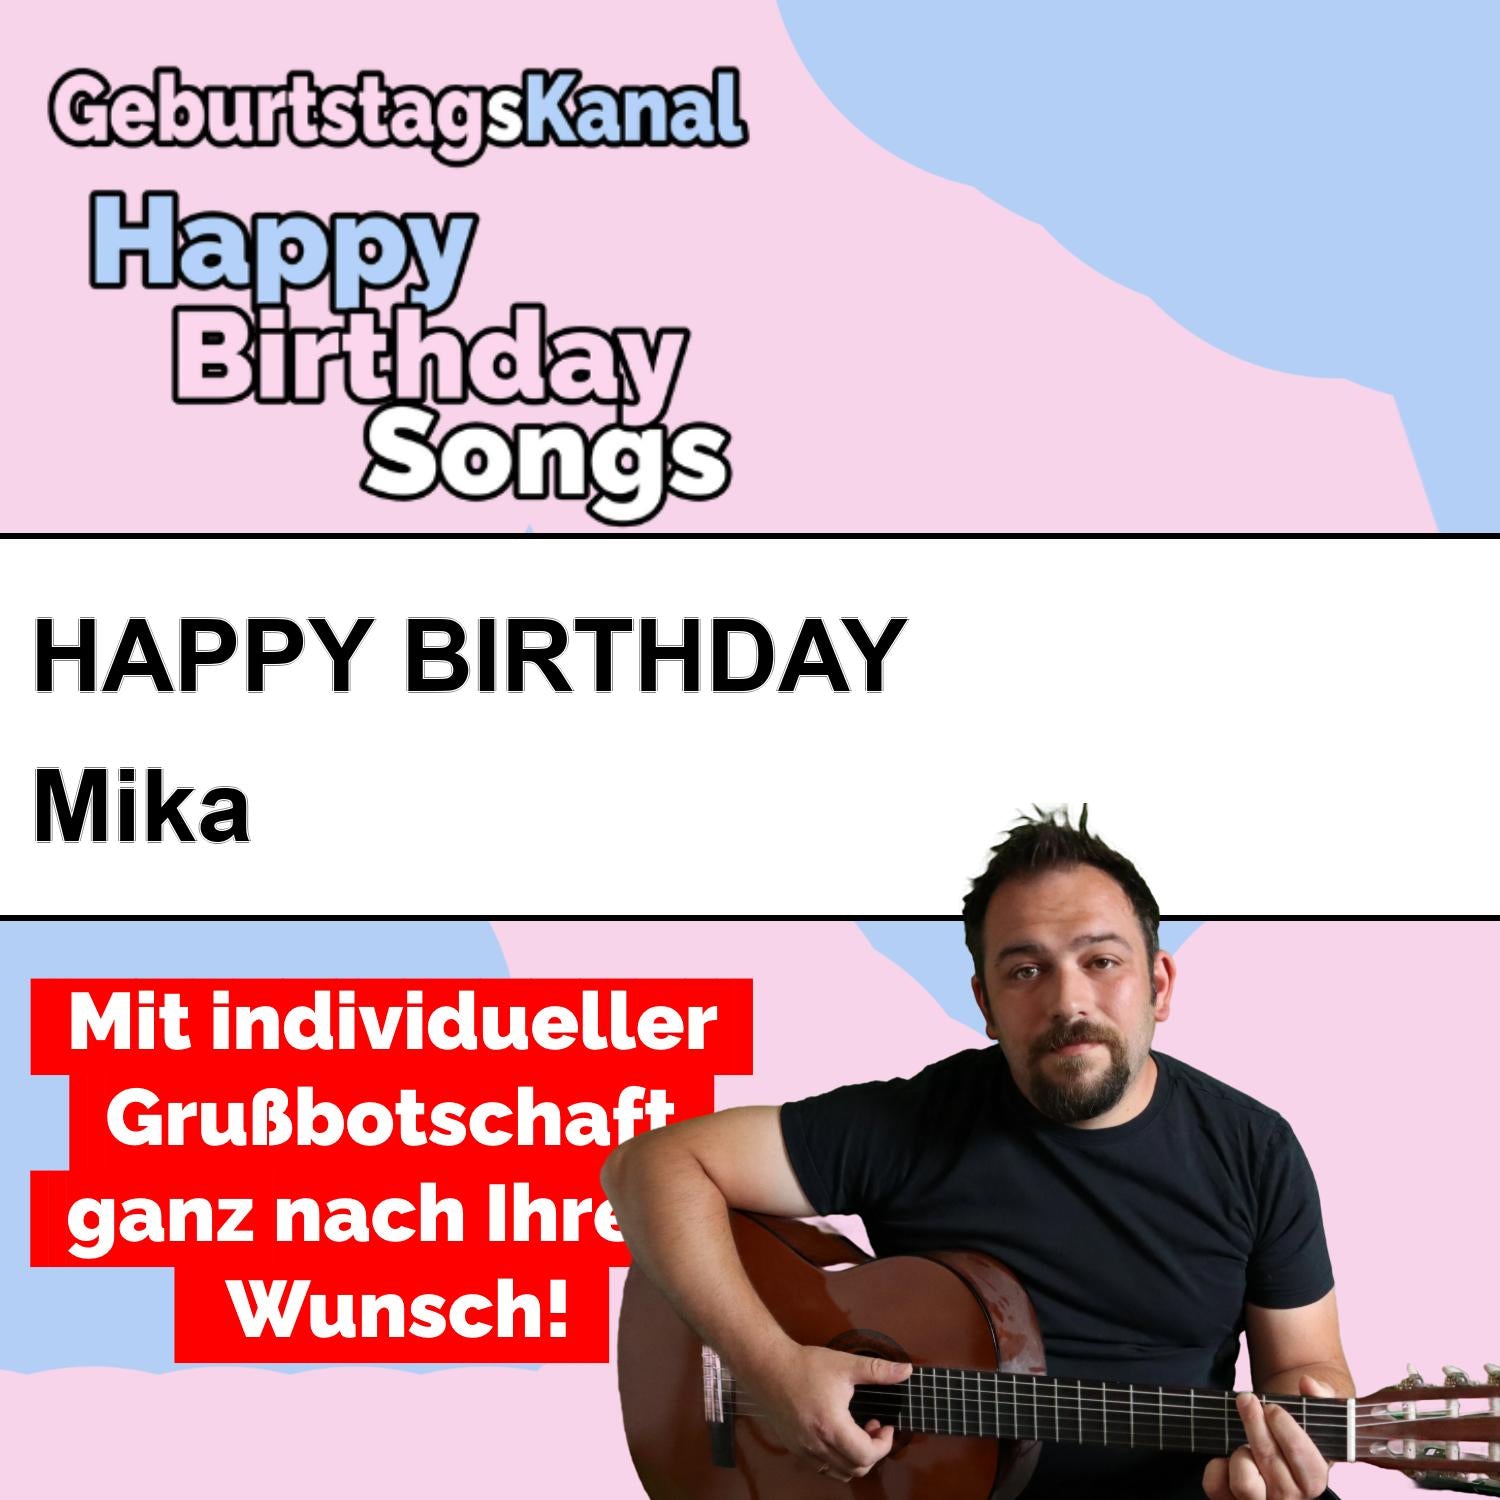 Produktbild Happy Birthday to you Mika mit Wunschgrußbotschaft